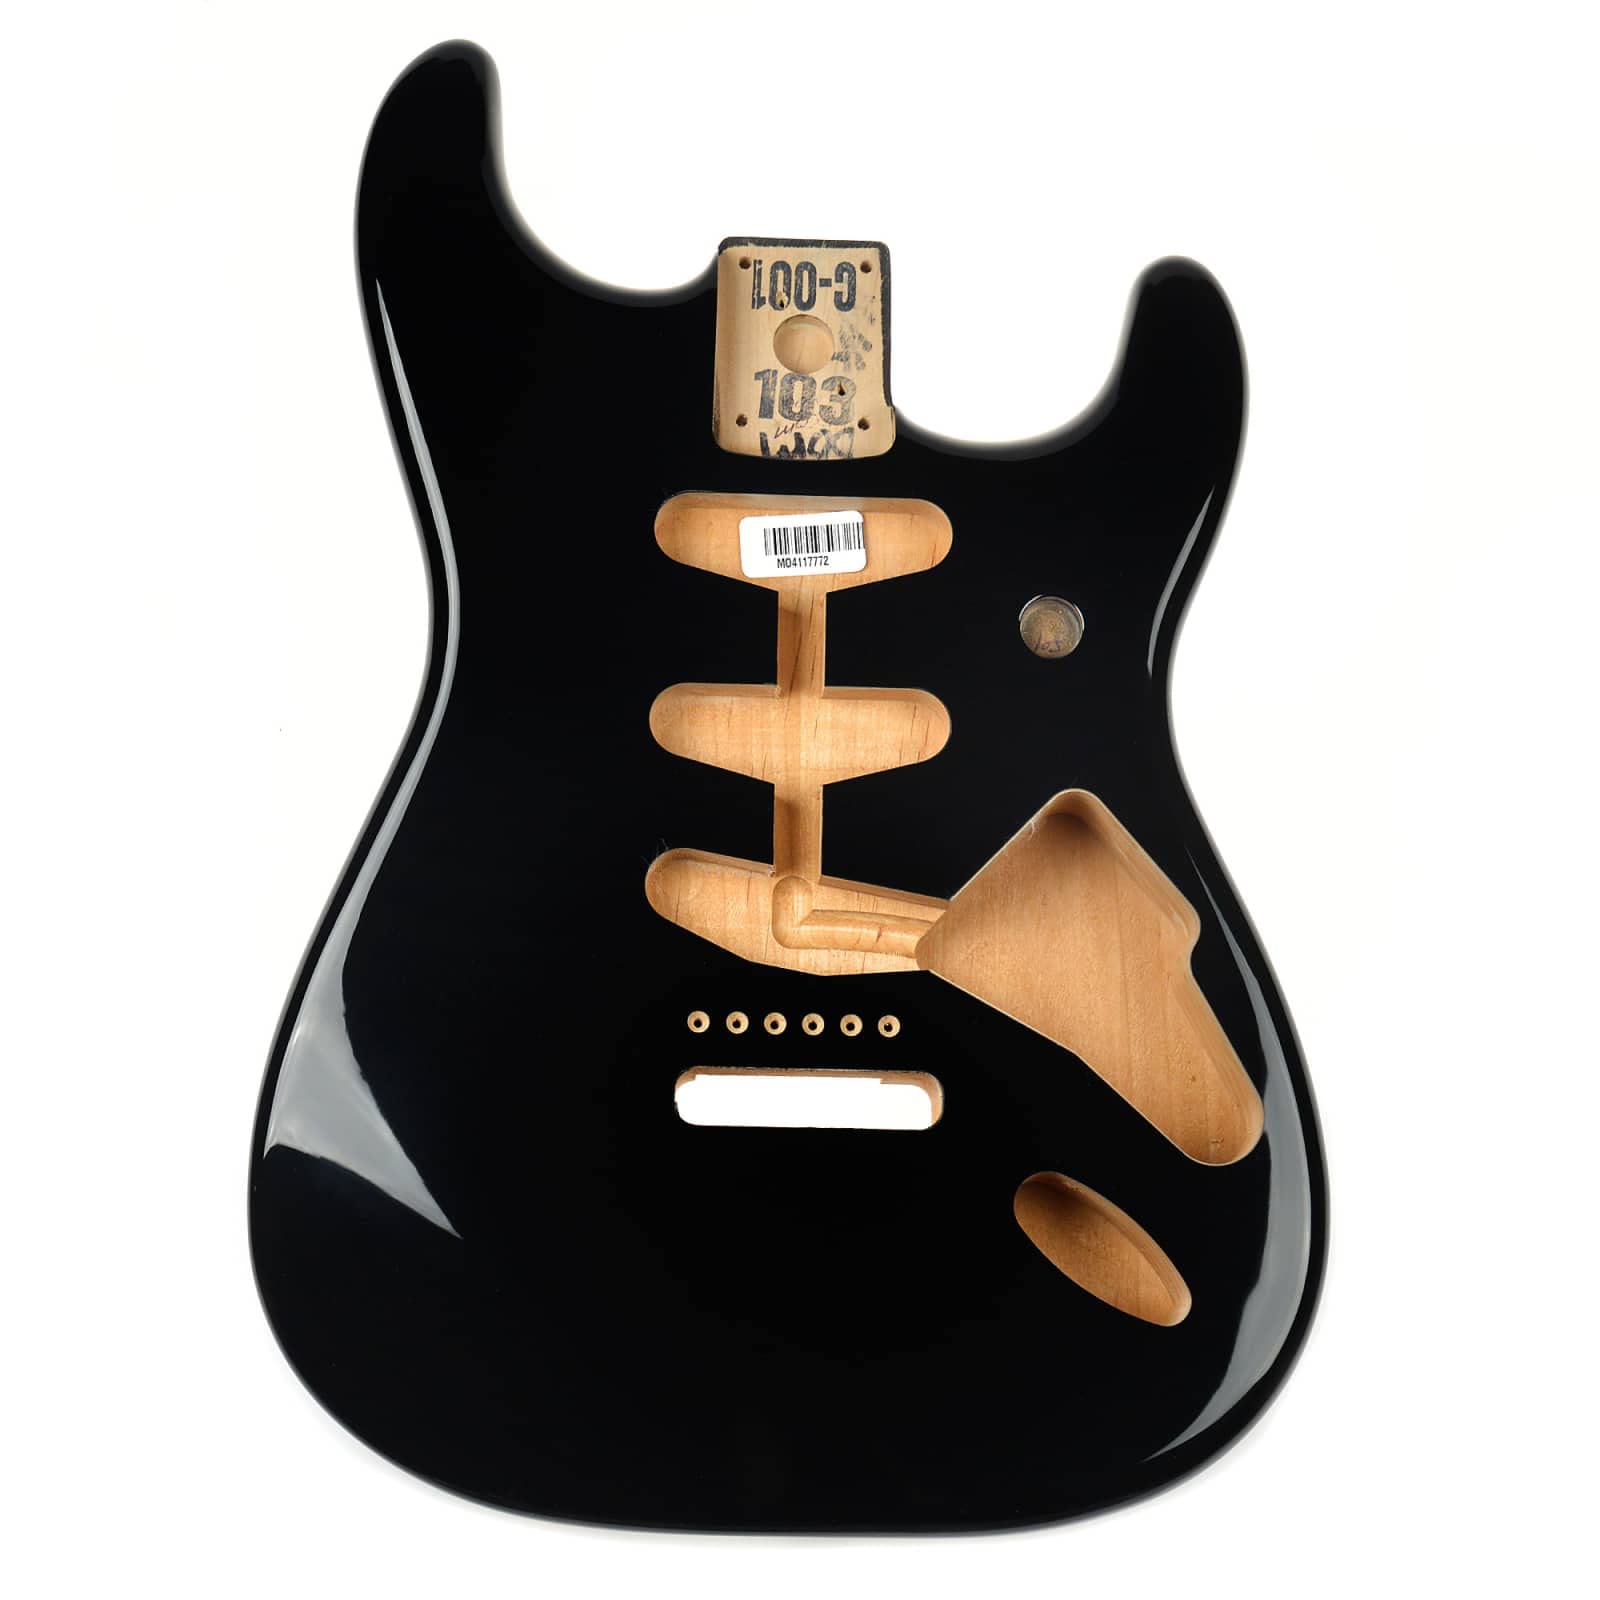 Fender Корпус Stratocaster из ольхи - Винтажная разводка бриджа - 3 цвета Sunburst